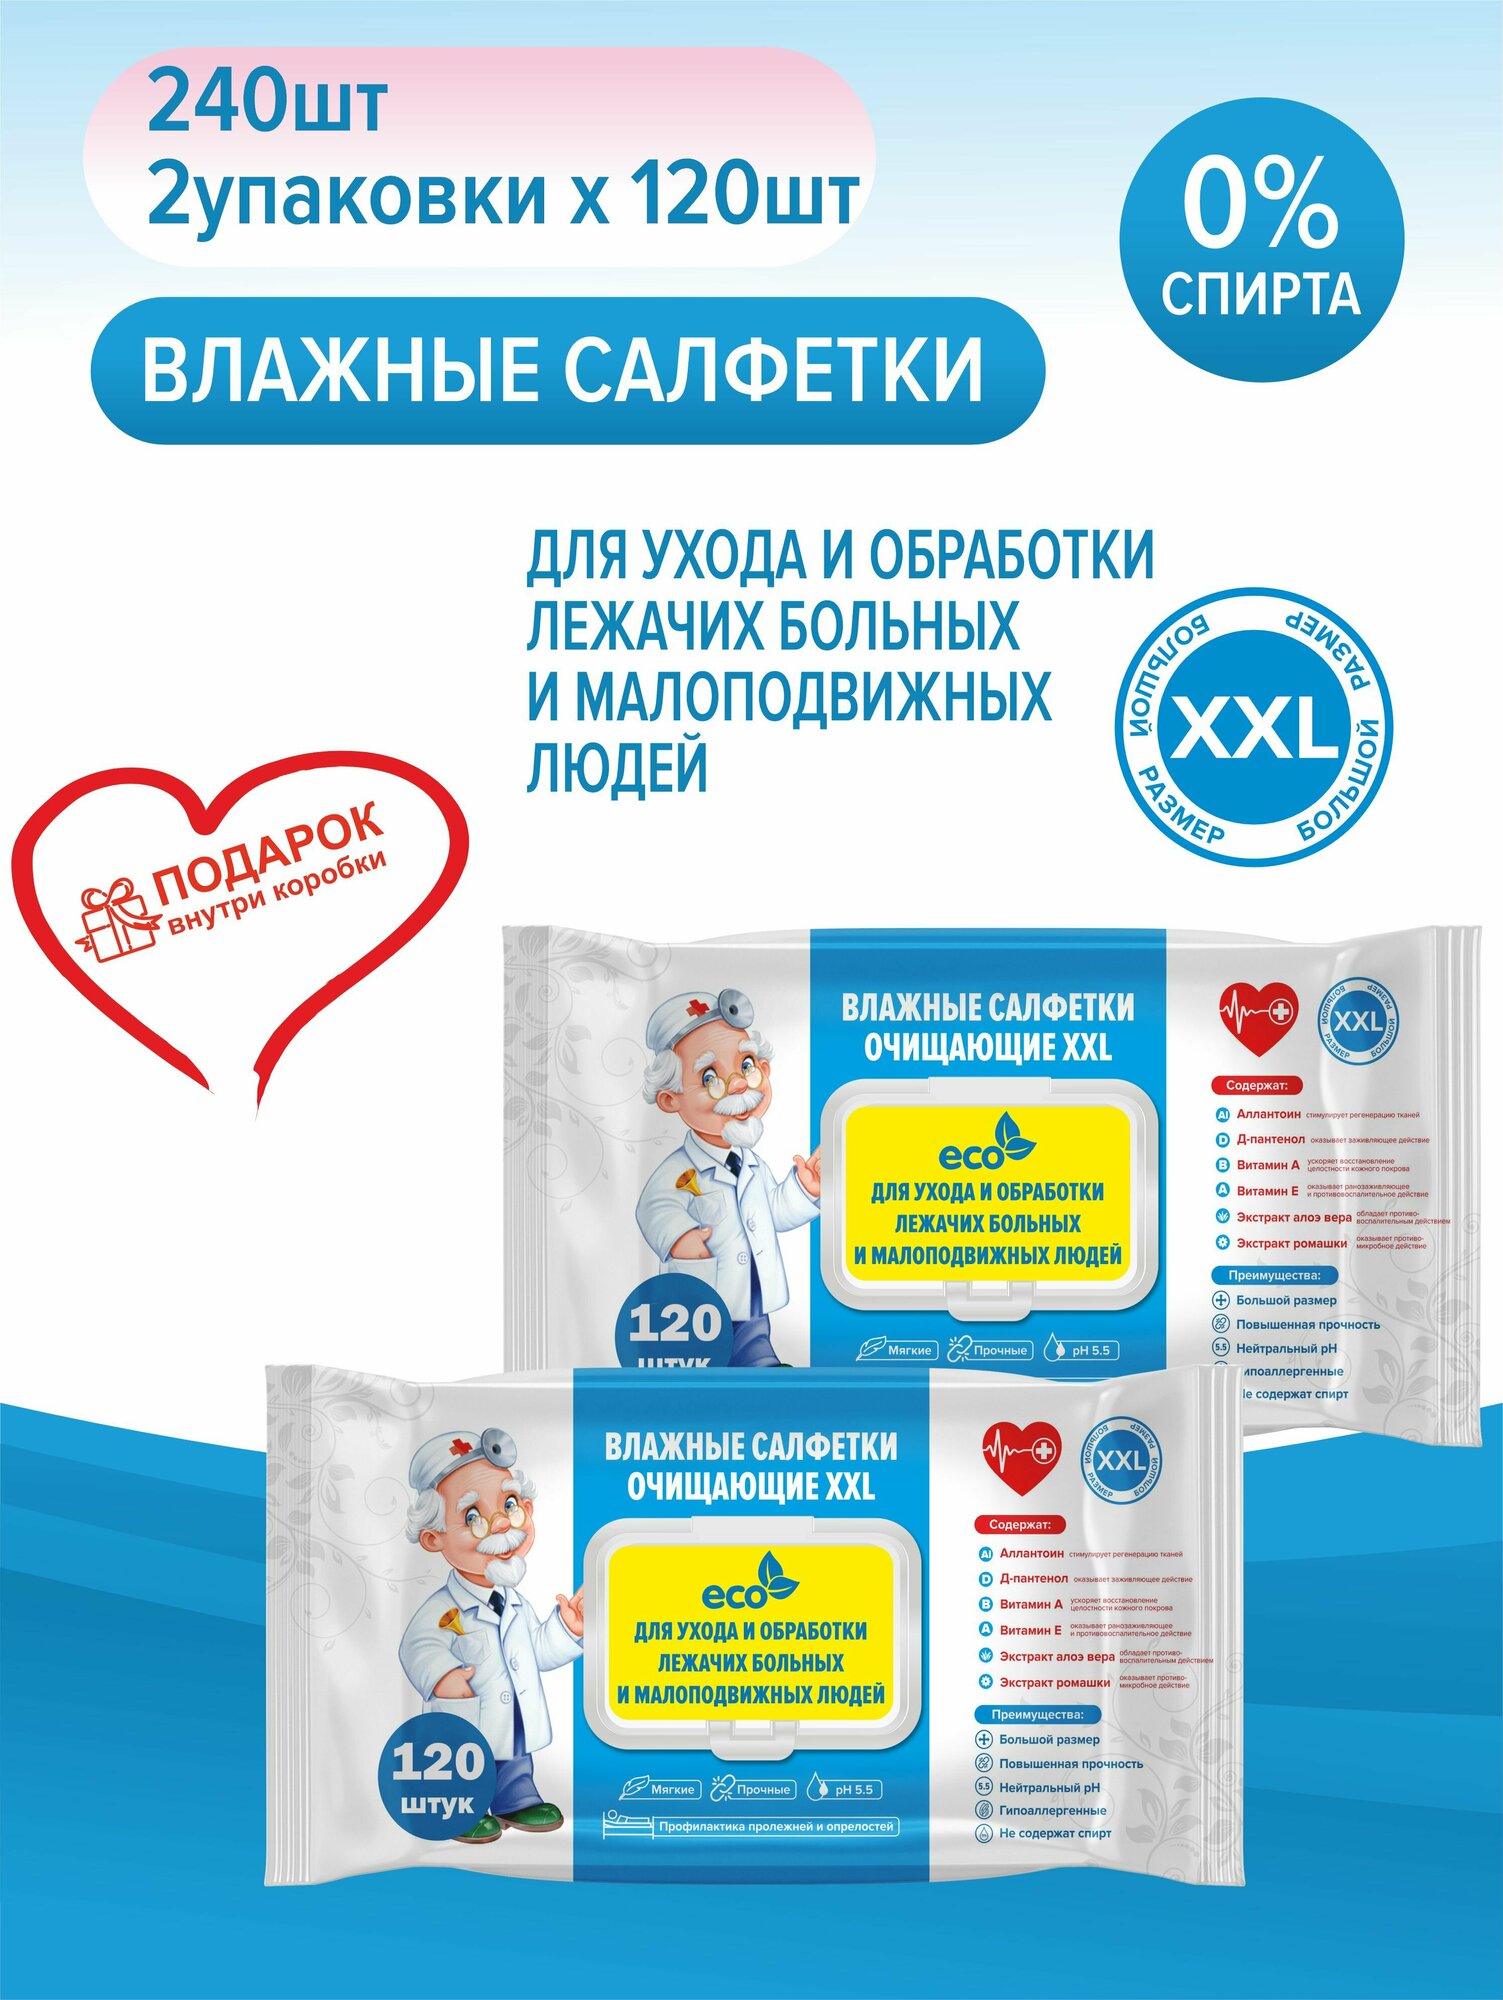 Влажные салфетки очищающие XXL для ухода и обработки лежачих больных 25*23см, 2 упаковки по 120 шт+подарок, с клапаном, гипоаллергенные